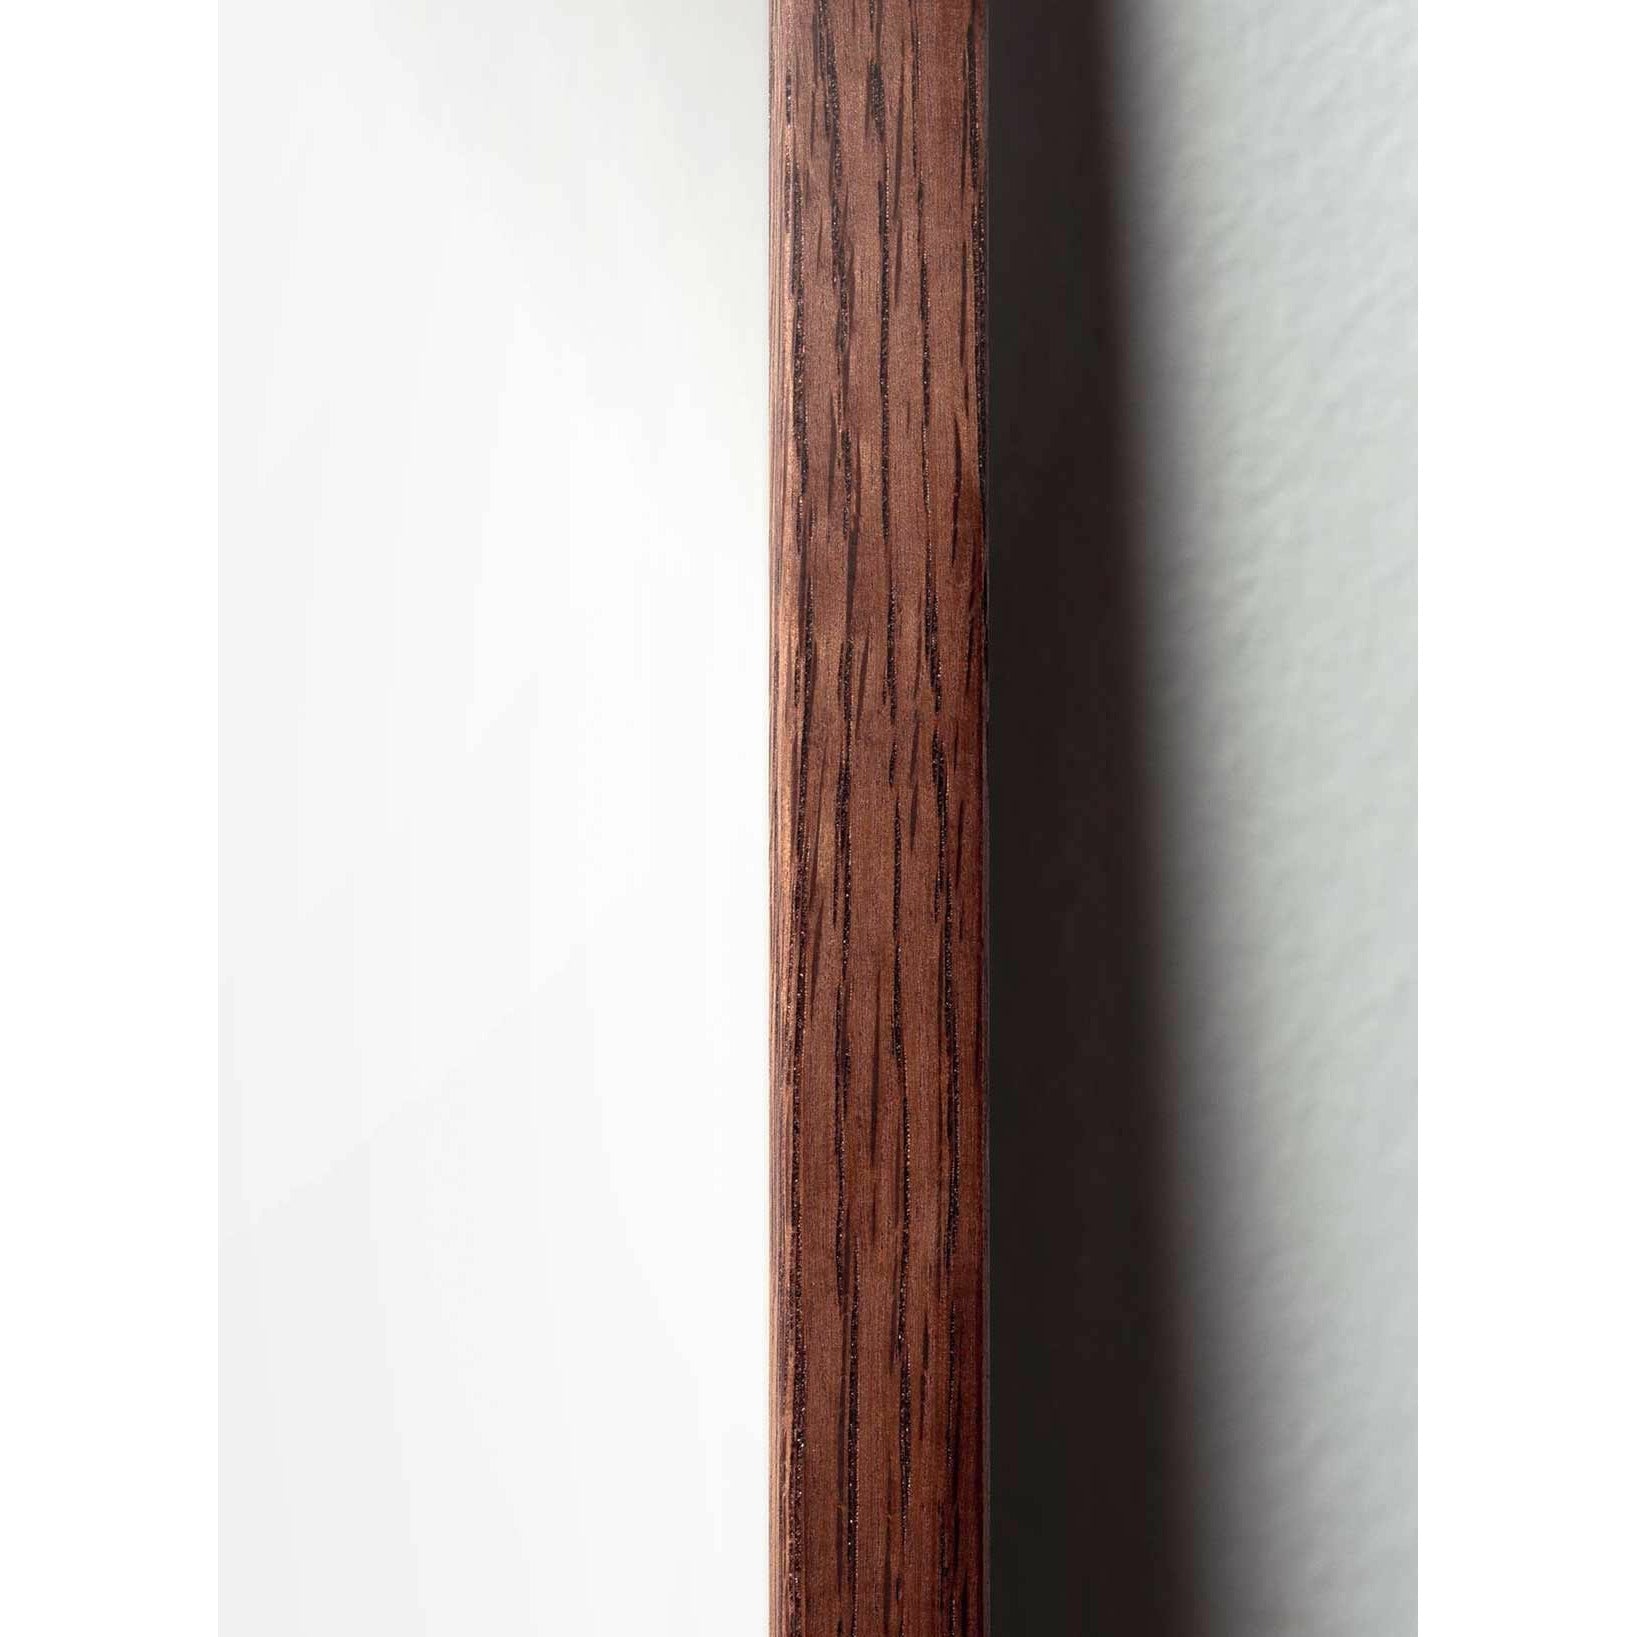 Plakát Pine Cone Line Pine Cone, rám vyrobený z tmavého dřeva 50x70 cm, bílé pozadí